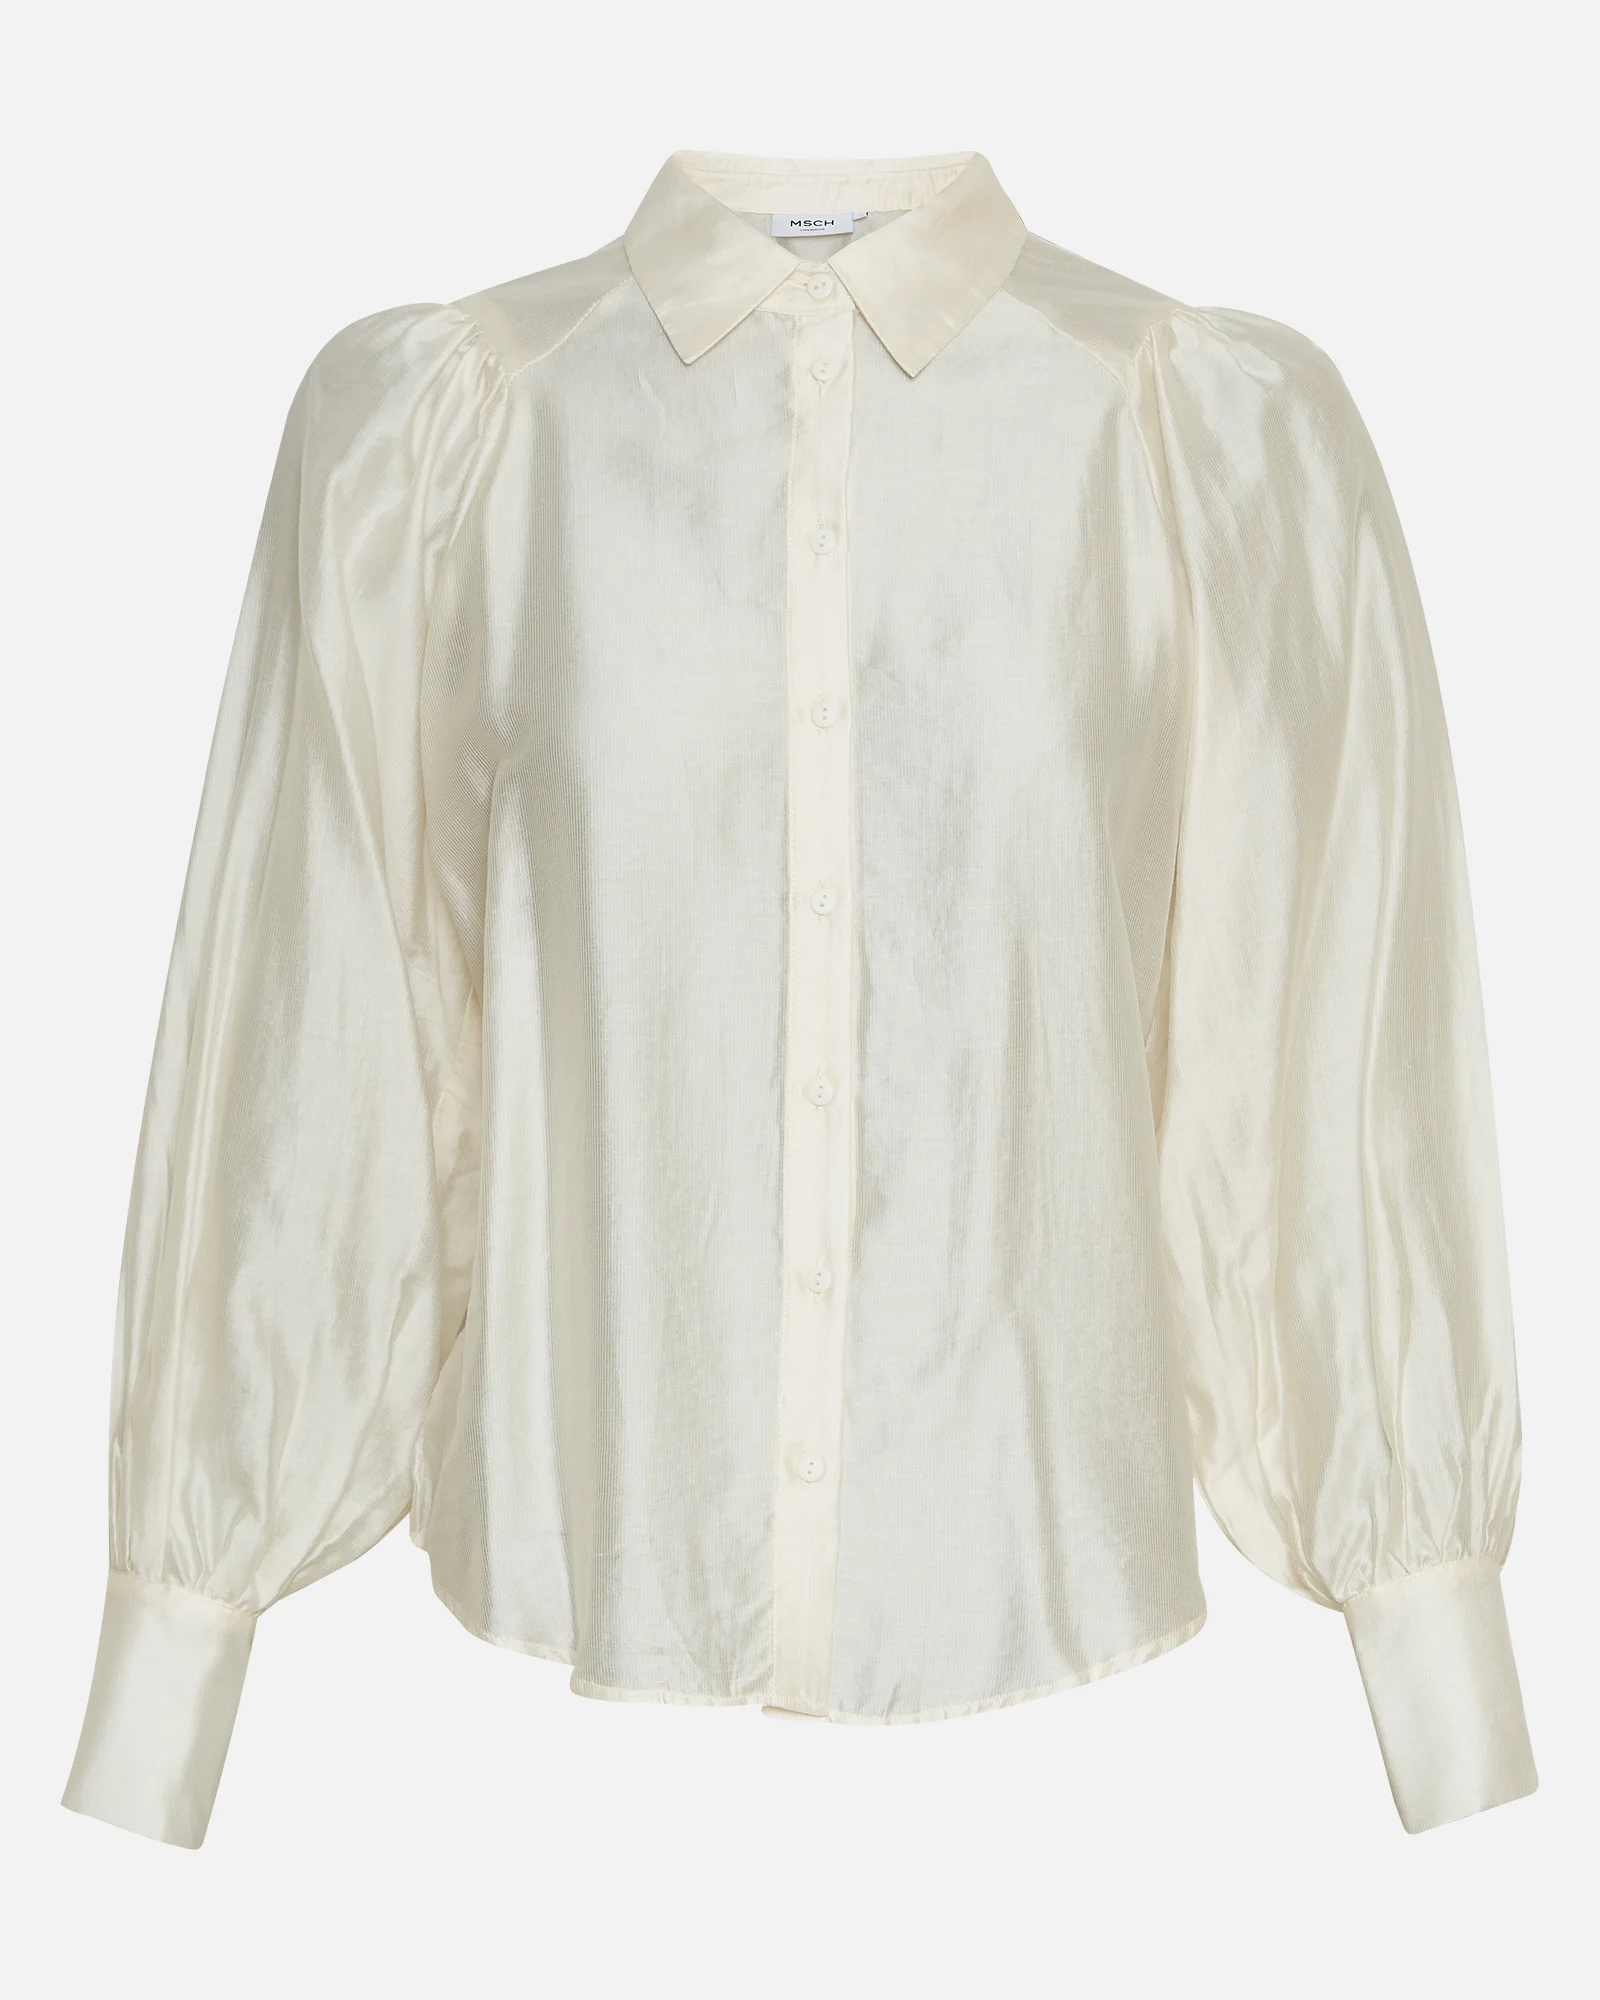 MSCHVarsha Romina Shirt_18265_1_Egret